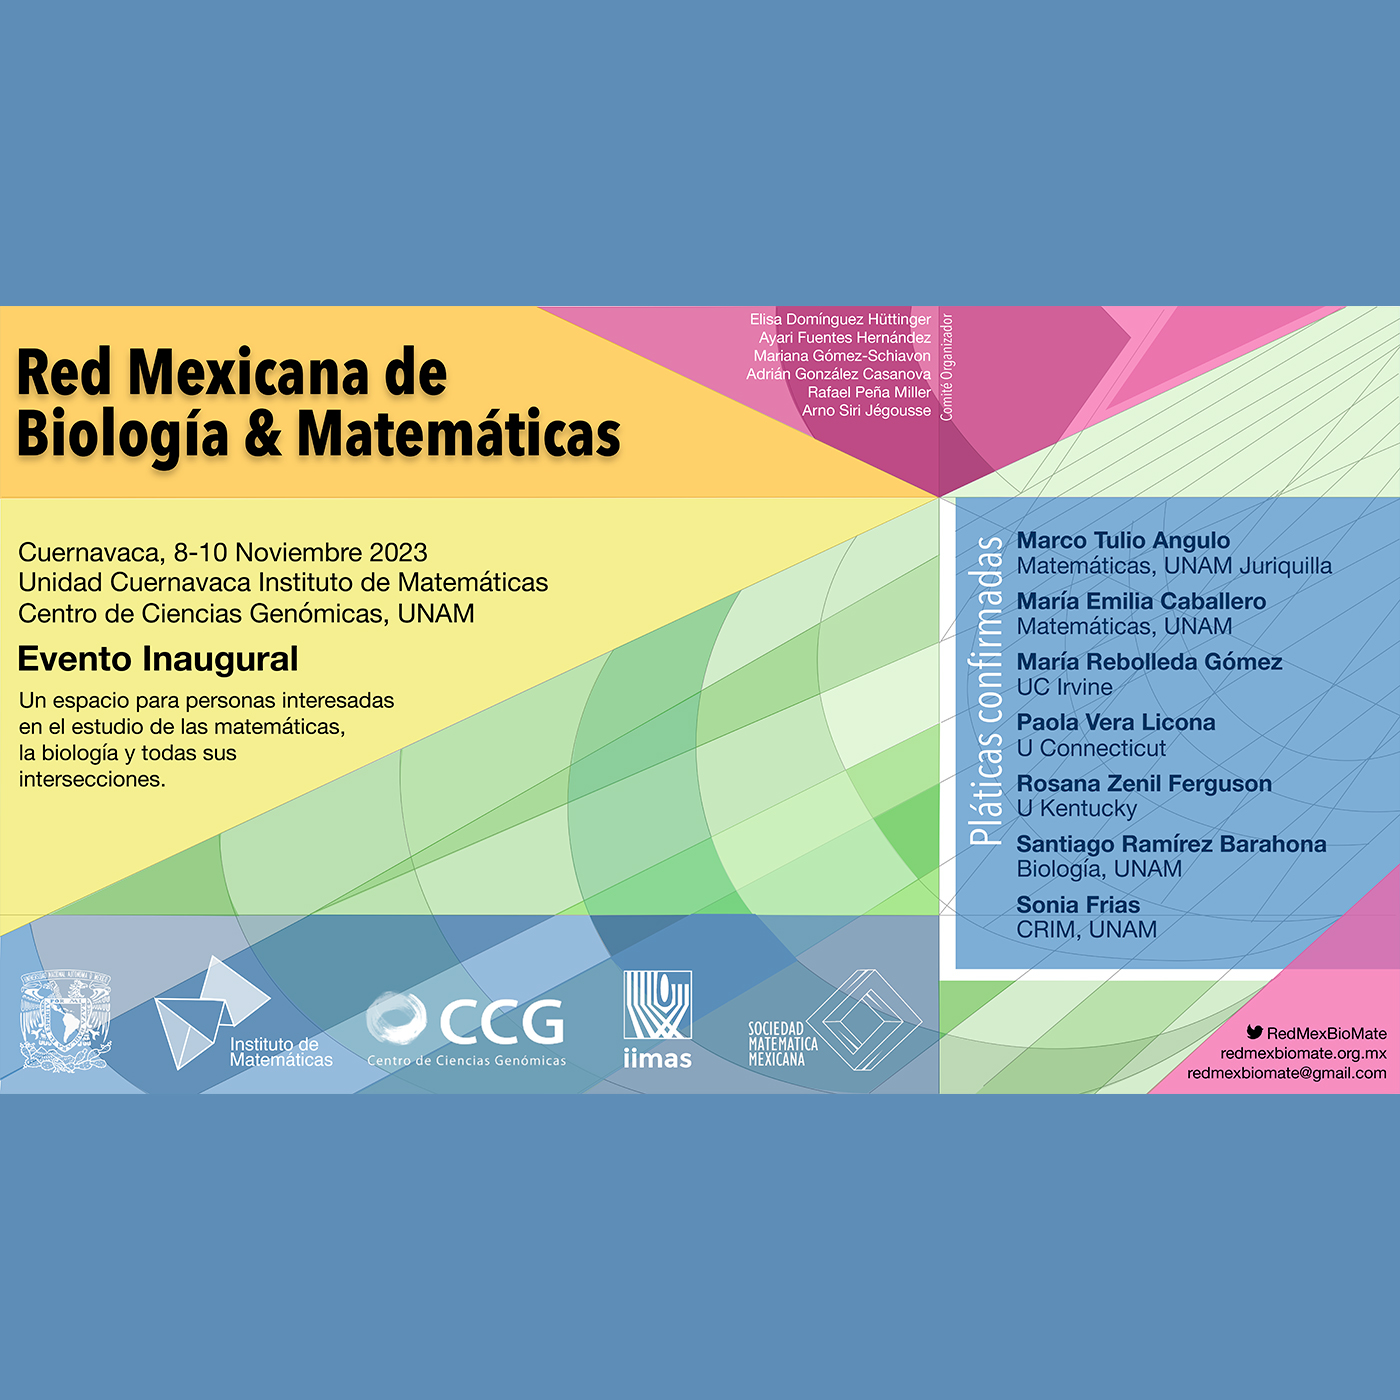 Red Mexicana de Biología & Matemáticas